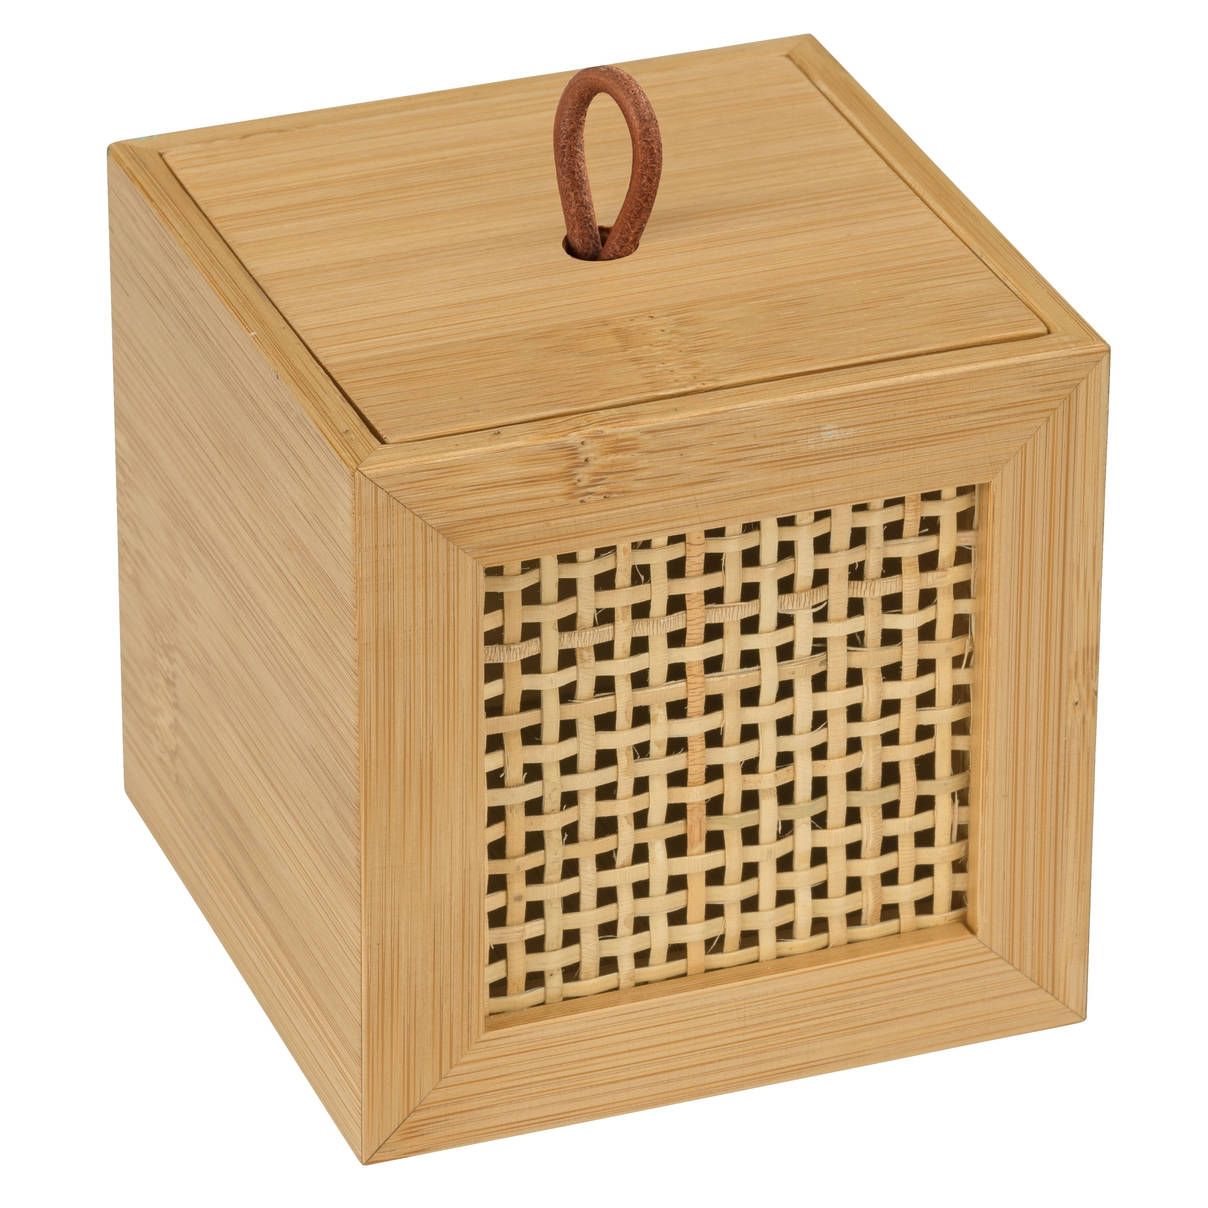 Úložný box na drobnosti s víkem ALLEGRE BAMBOO, 9 x 9 x 9 cm, WENKO - EMAKO.CZ s.r.o.